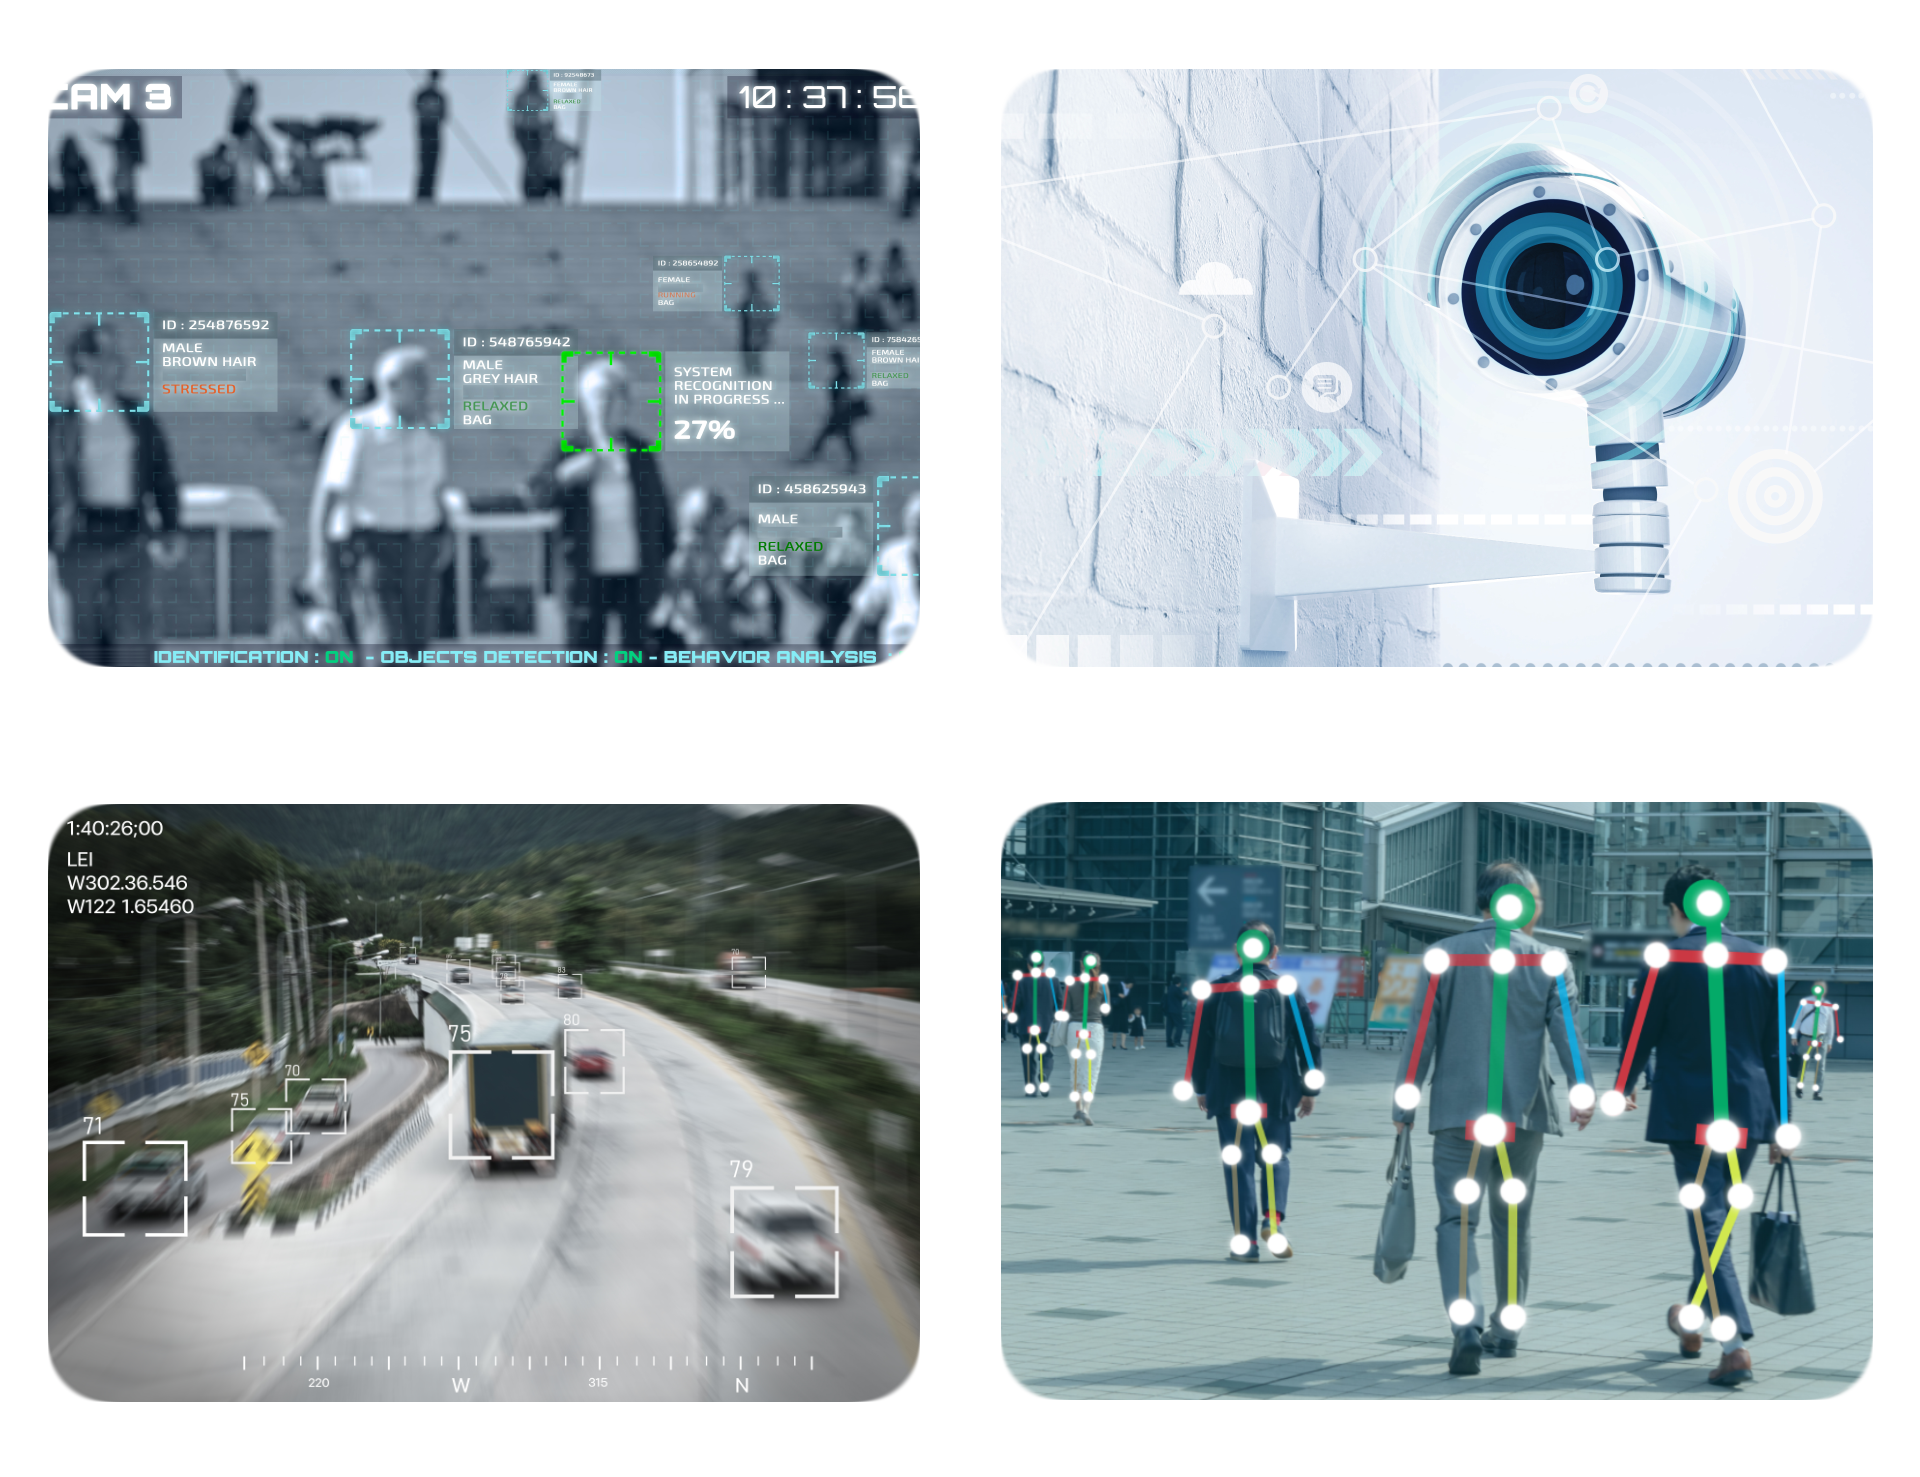 Inteligentne analityki wideo do automatyzacji monitoringu wizyjnego w oparciu o metody sztucznej inteligencji